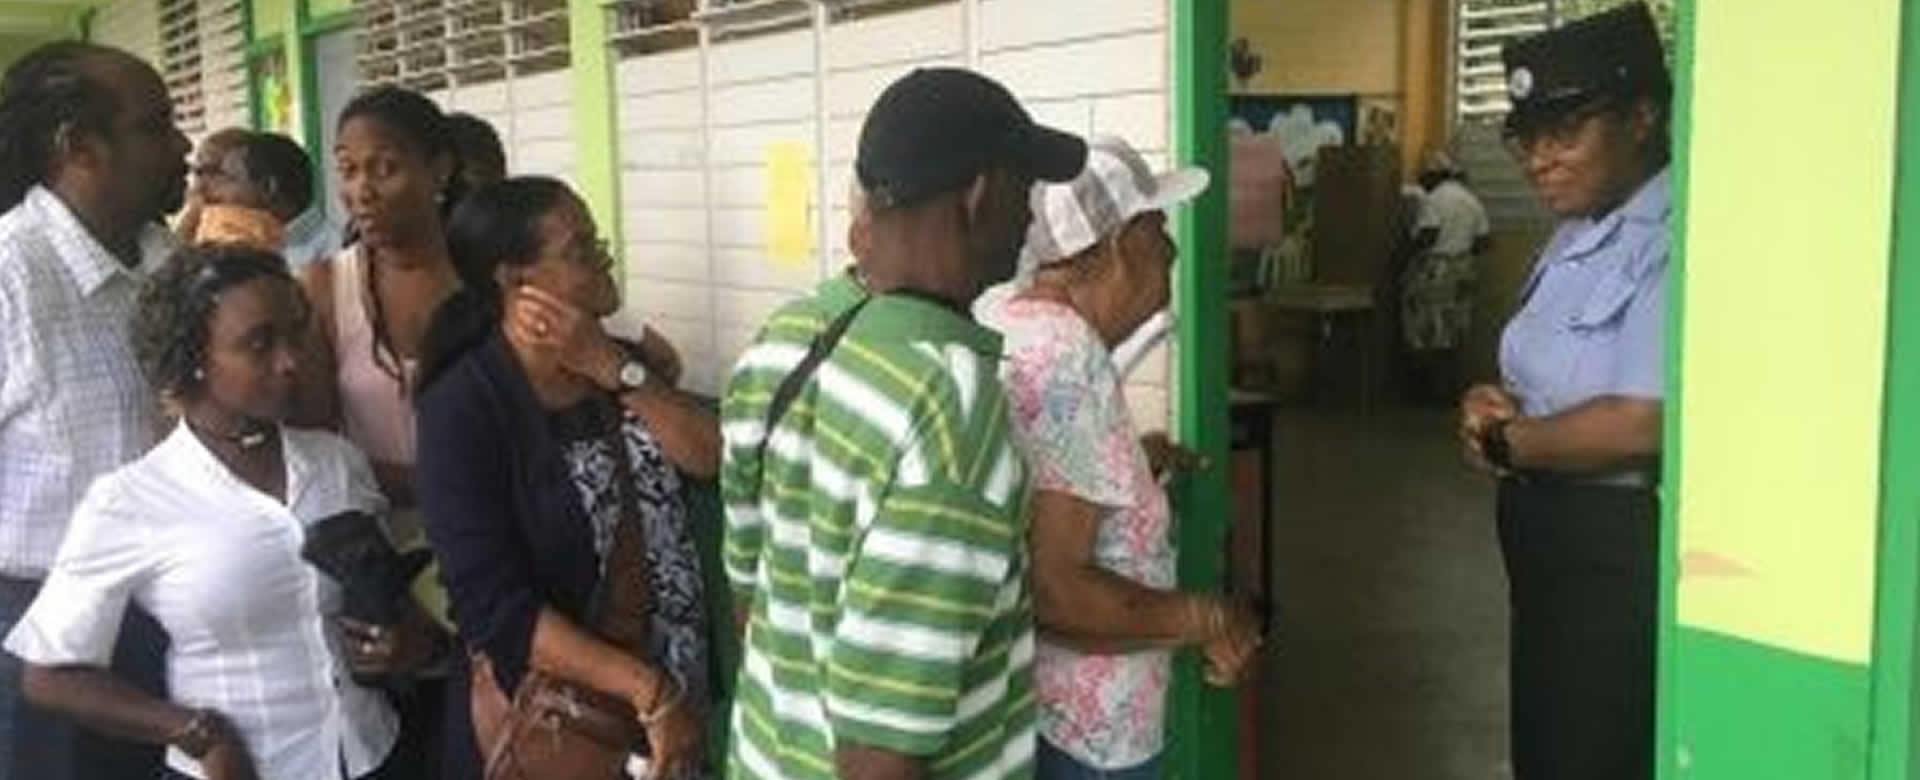 Dan inicio las elecciones presidenciales en Dominica